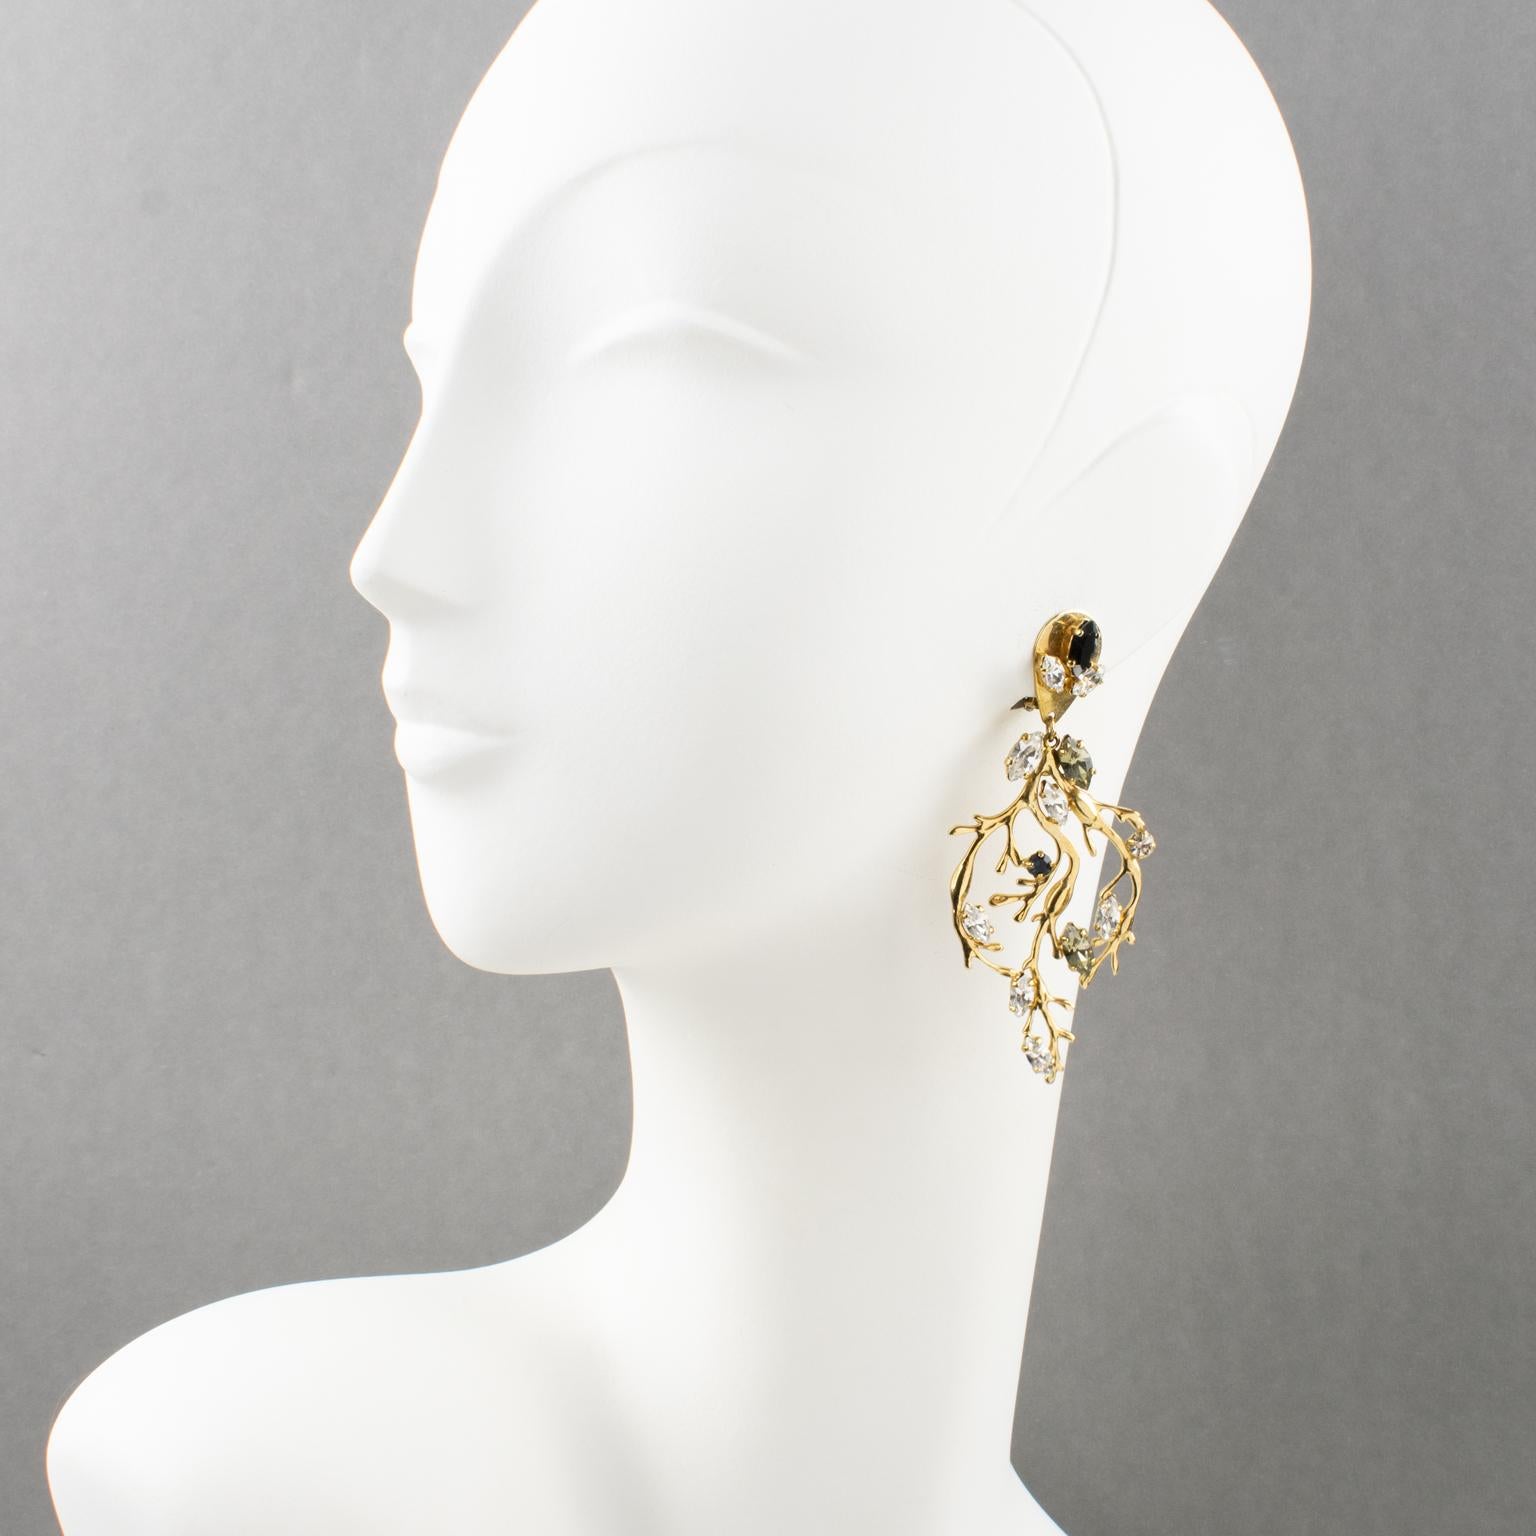 Les charmantes boucles d'oreilles à clip Zoe Coste for Reminiscence, ornées de bijoux de style baroque. Présente une composition encadrant une Branch surdimensionnée en métal doré, ornée de strass en cristal en forme de poire. Les strass en cristal